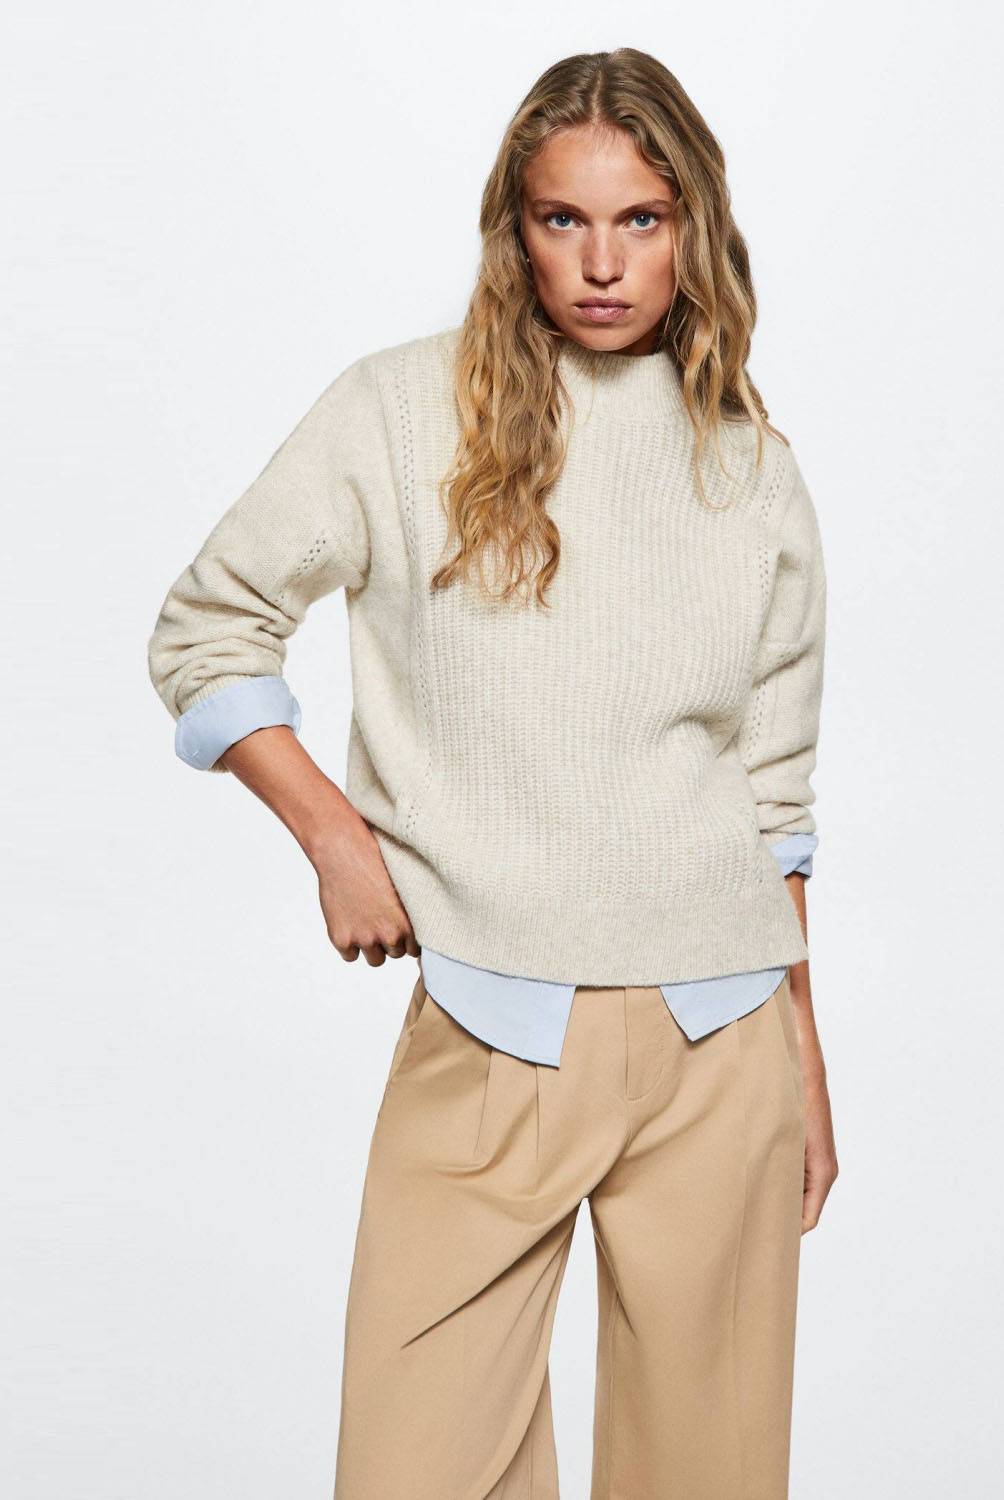 Sweater Punto Cuello Perkins Sardana Mujer | falabella.com